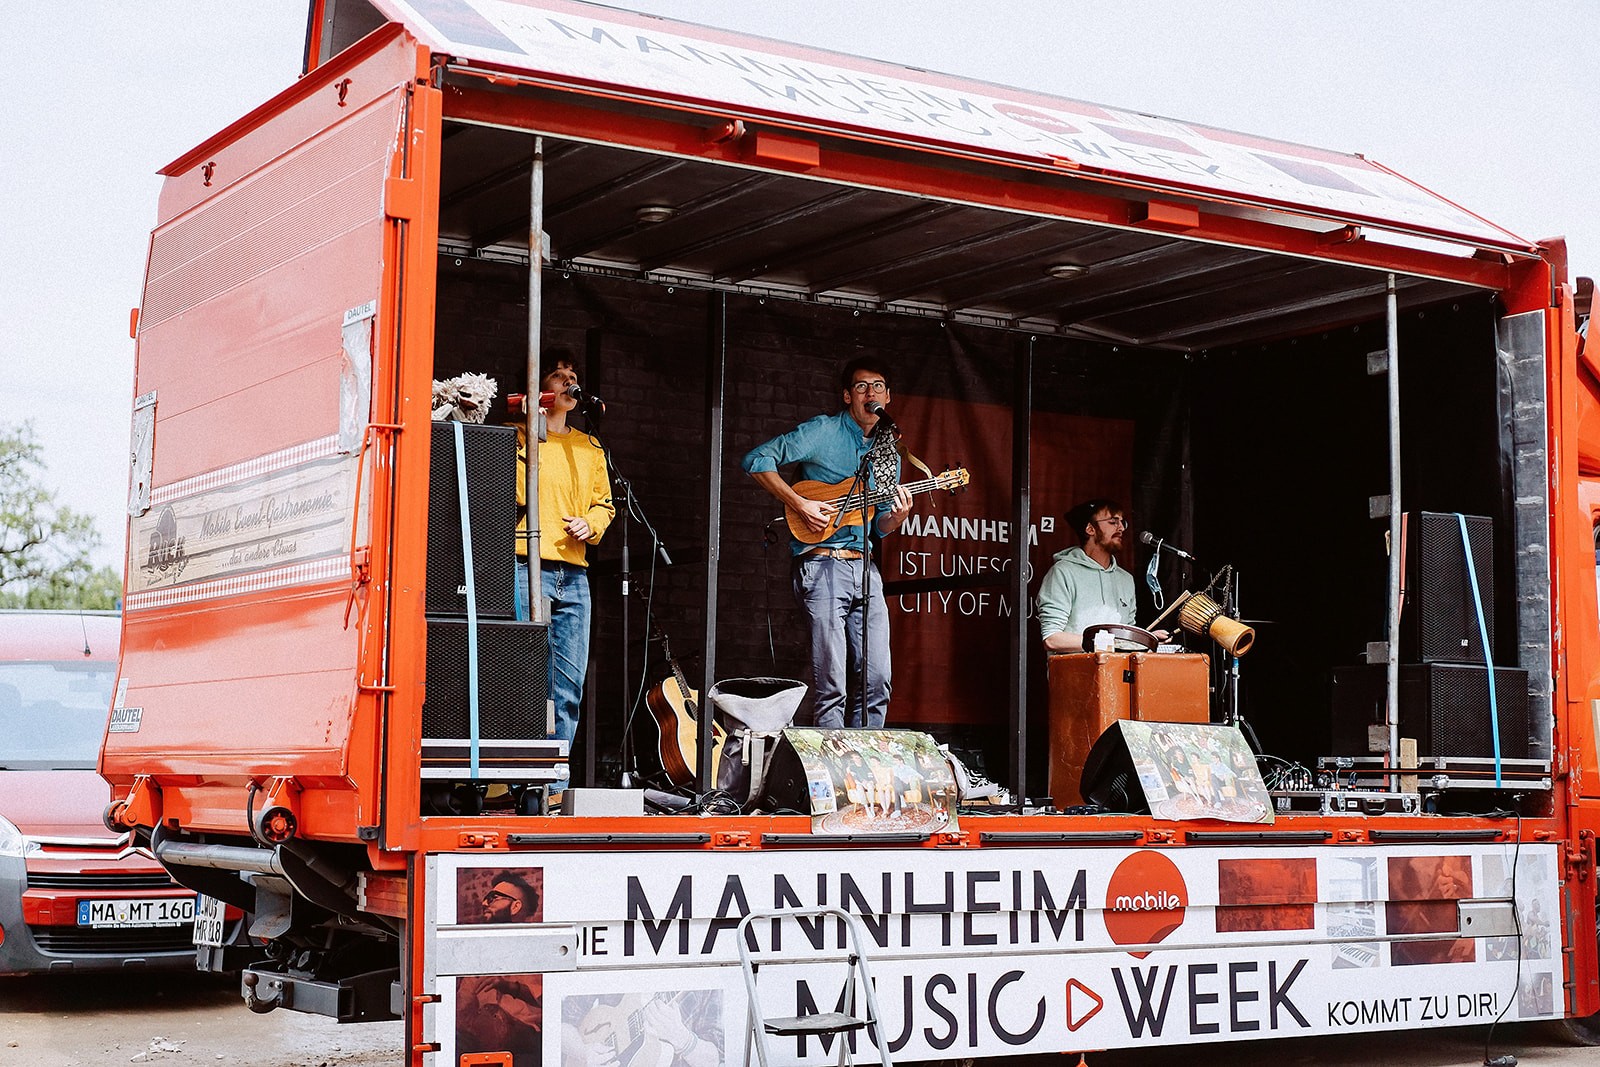 Ein Bild, auf dem die Crew der Music Week Mannheim leidenschaftlich Musik macht. Die Musiker stehen auf der mobilen Bühne und spielen ihre Instrumente mit vollem Einsatz.